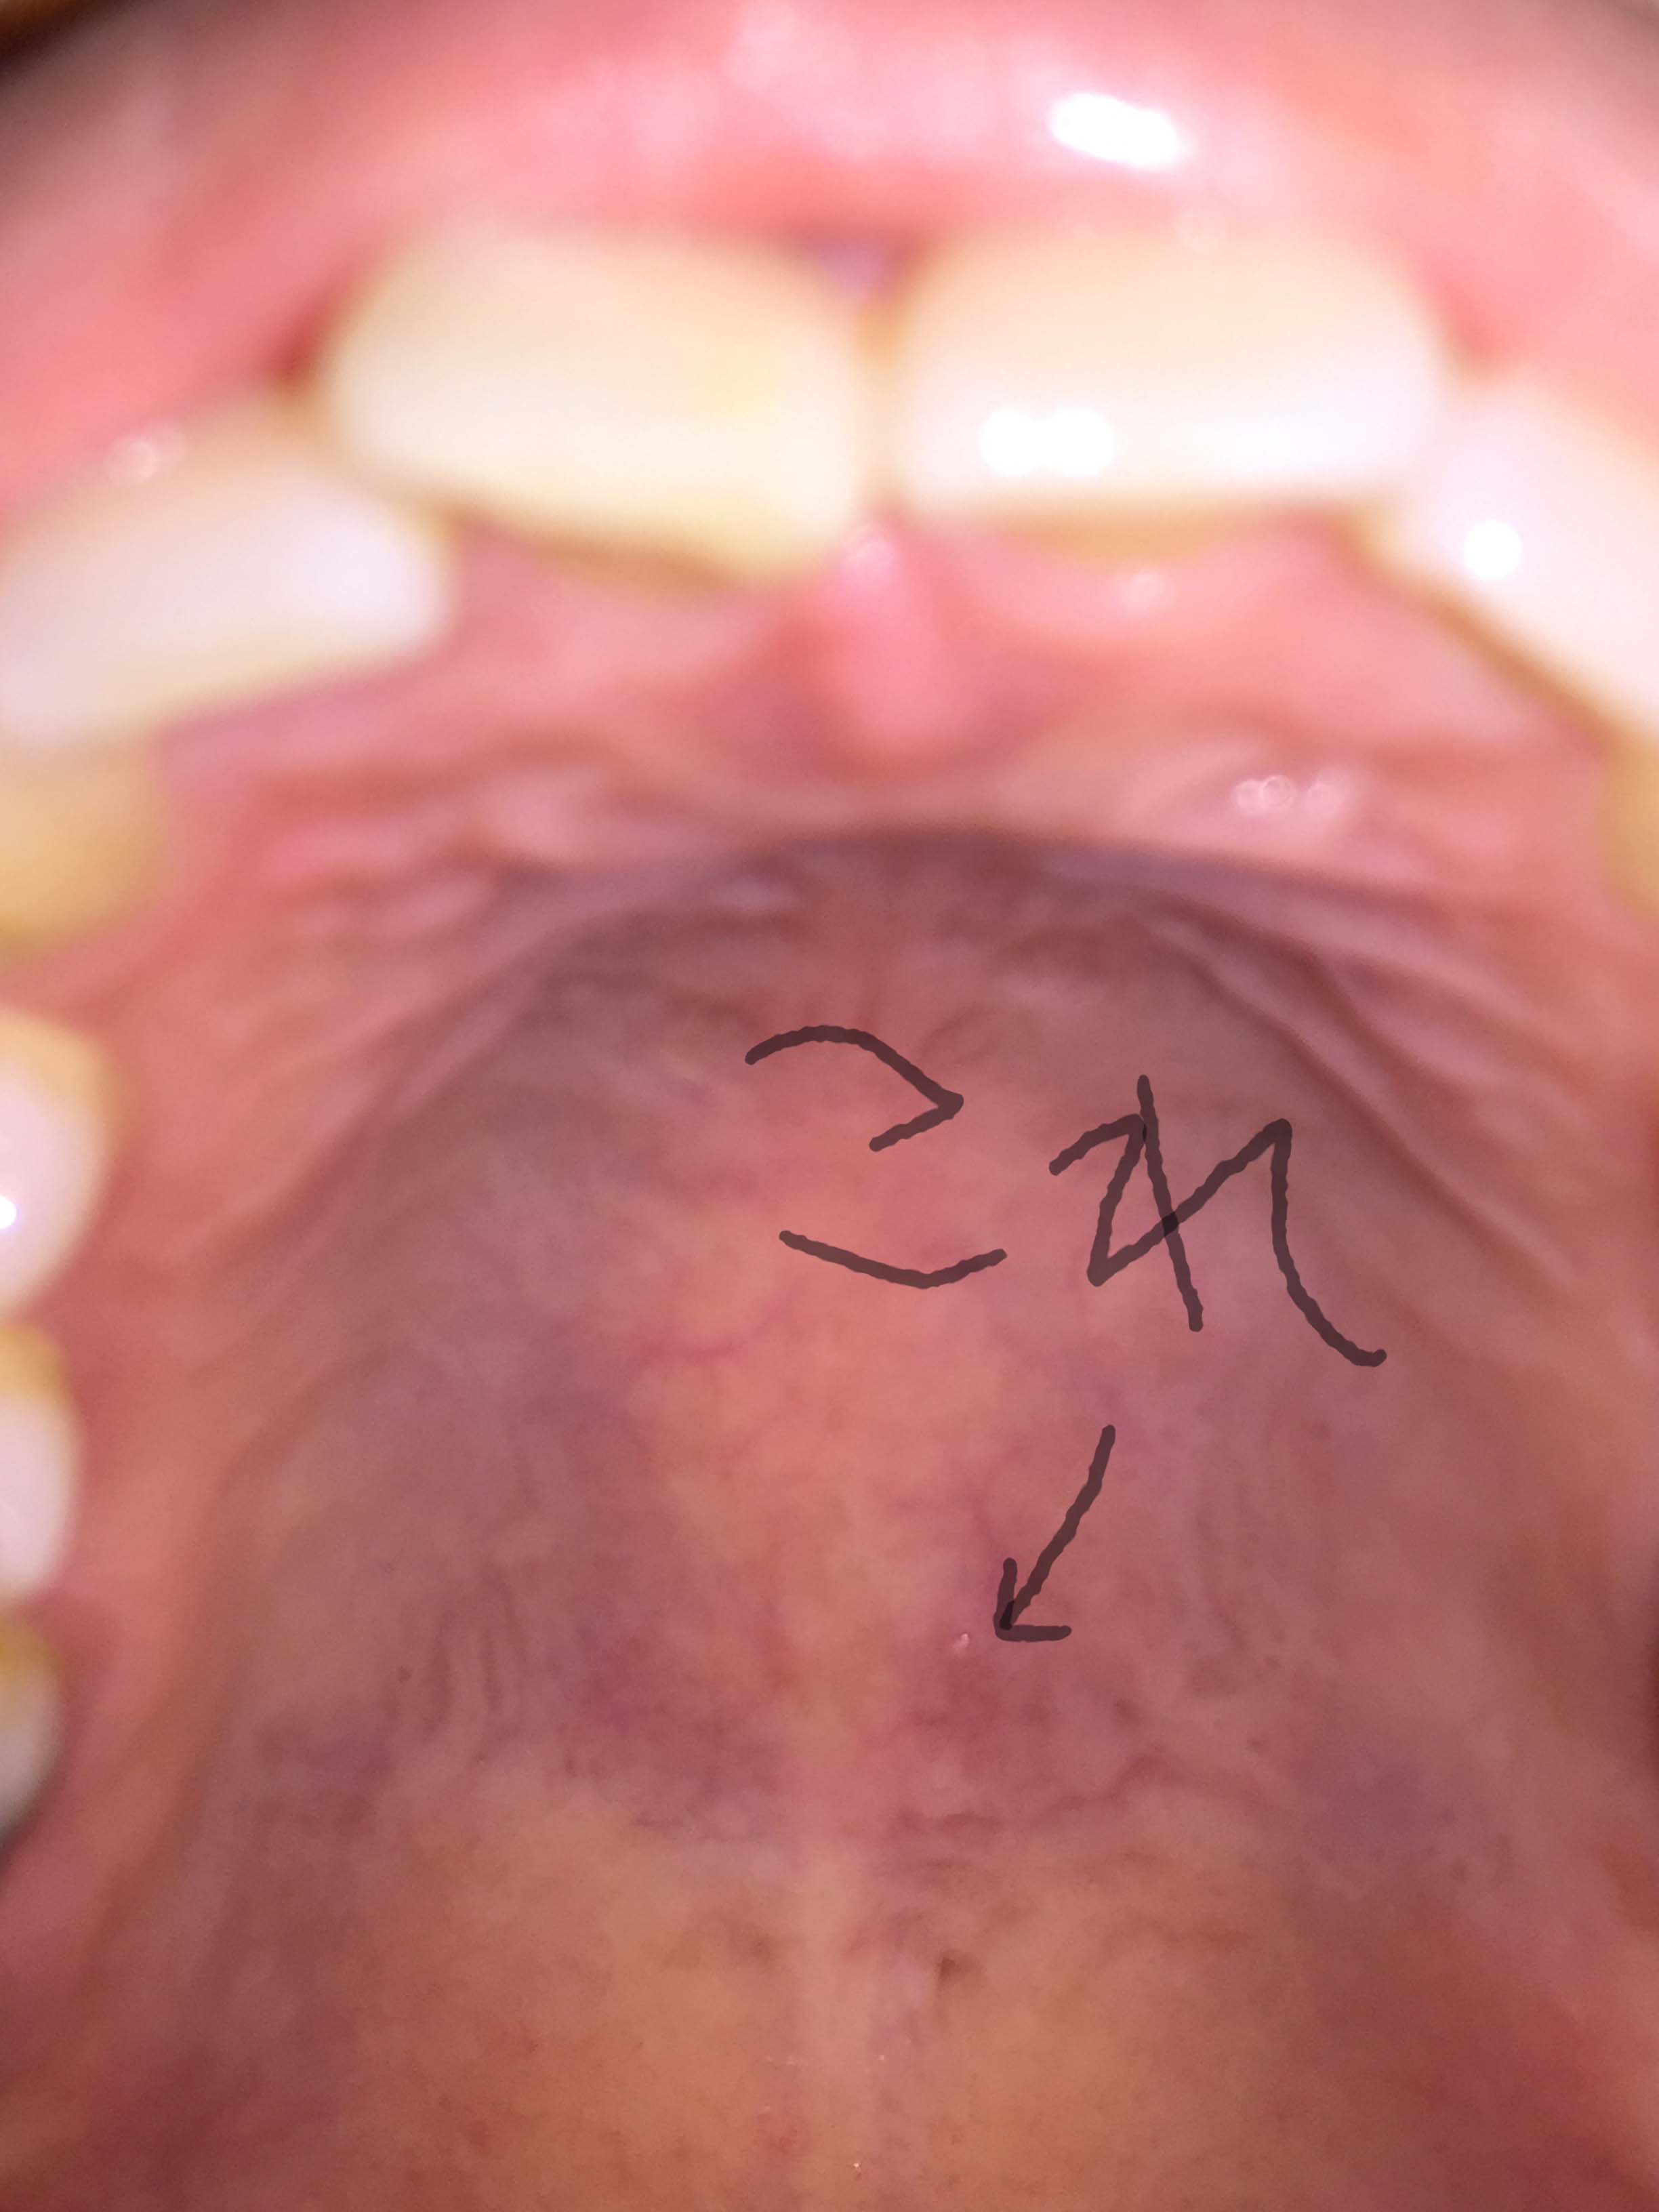 [写真あり] 舌で上顎を触るとプチッとした物ができていて心配 歯チャンネル歯科相談室